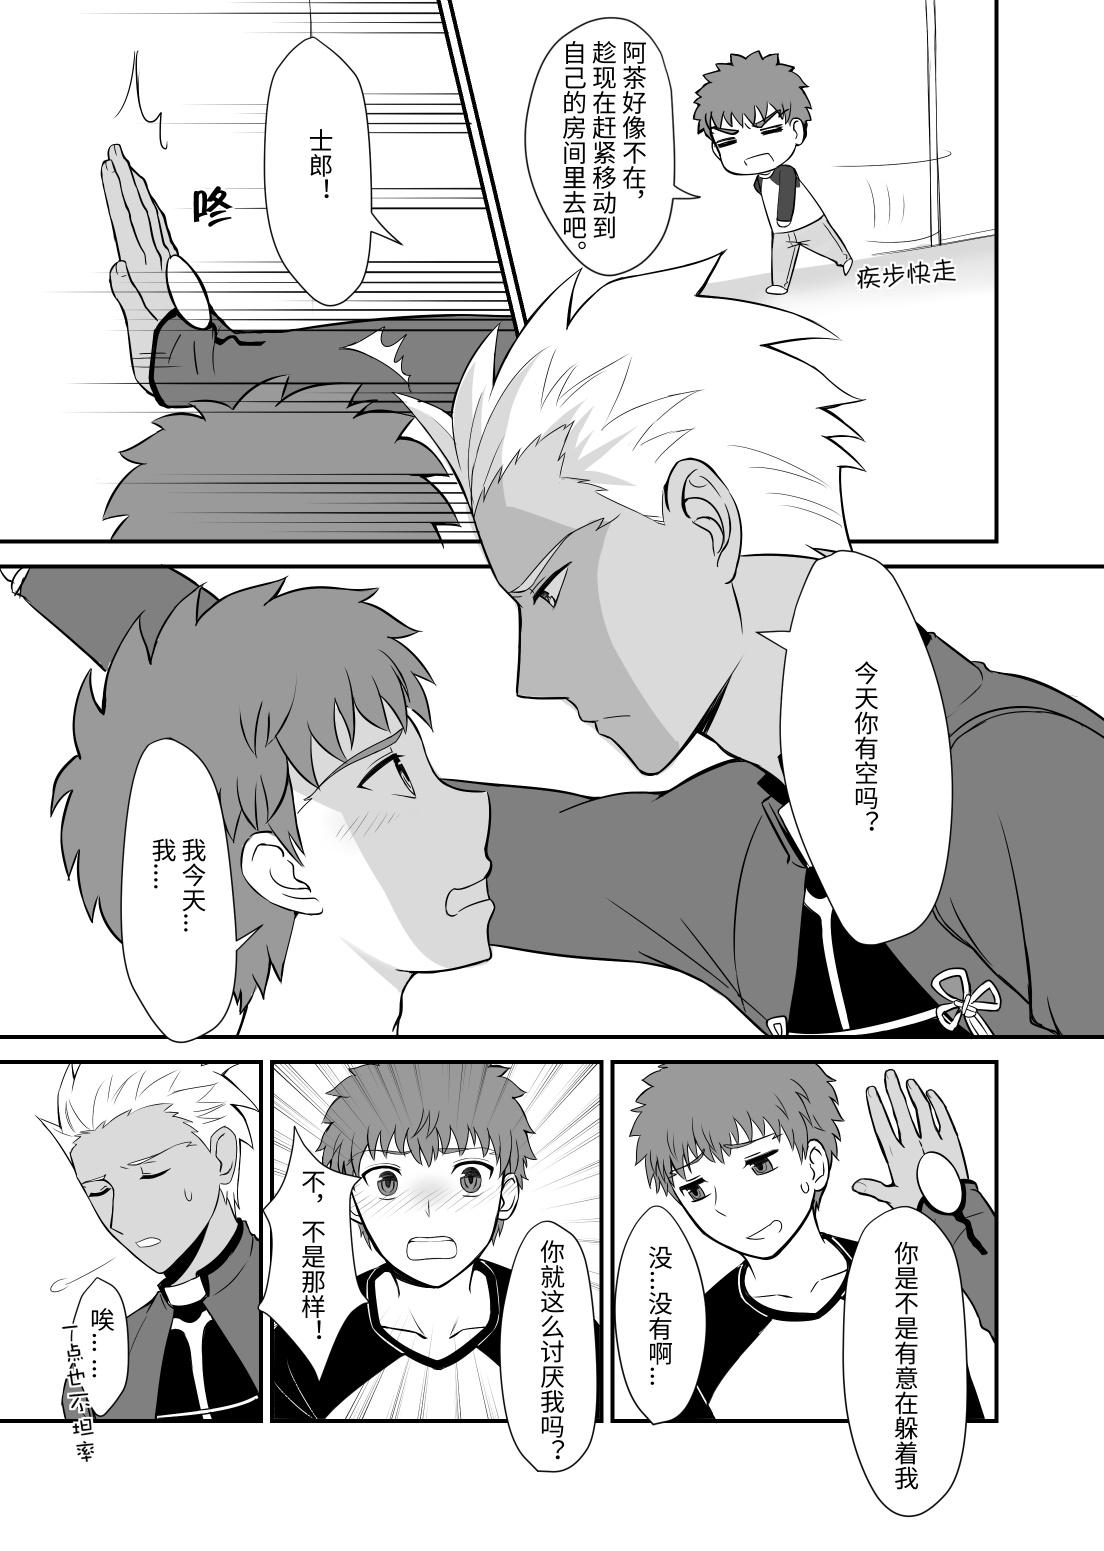 Masterbate Archer x Emiya Shirou - Fate stay night Gaybukkake - Page 3